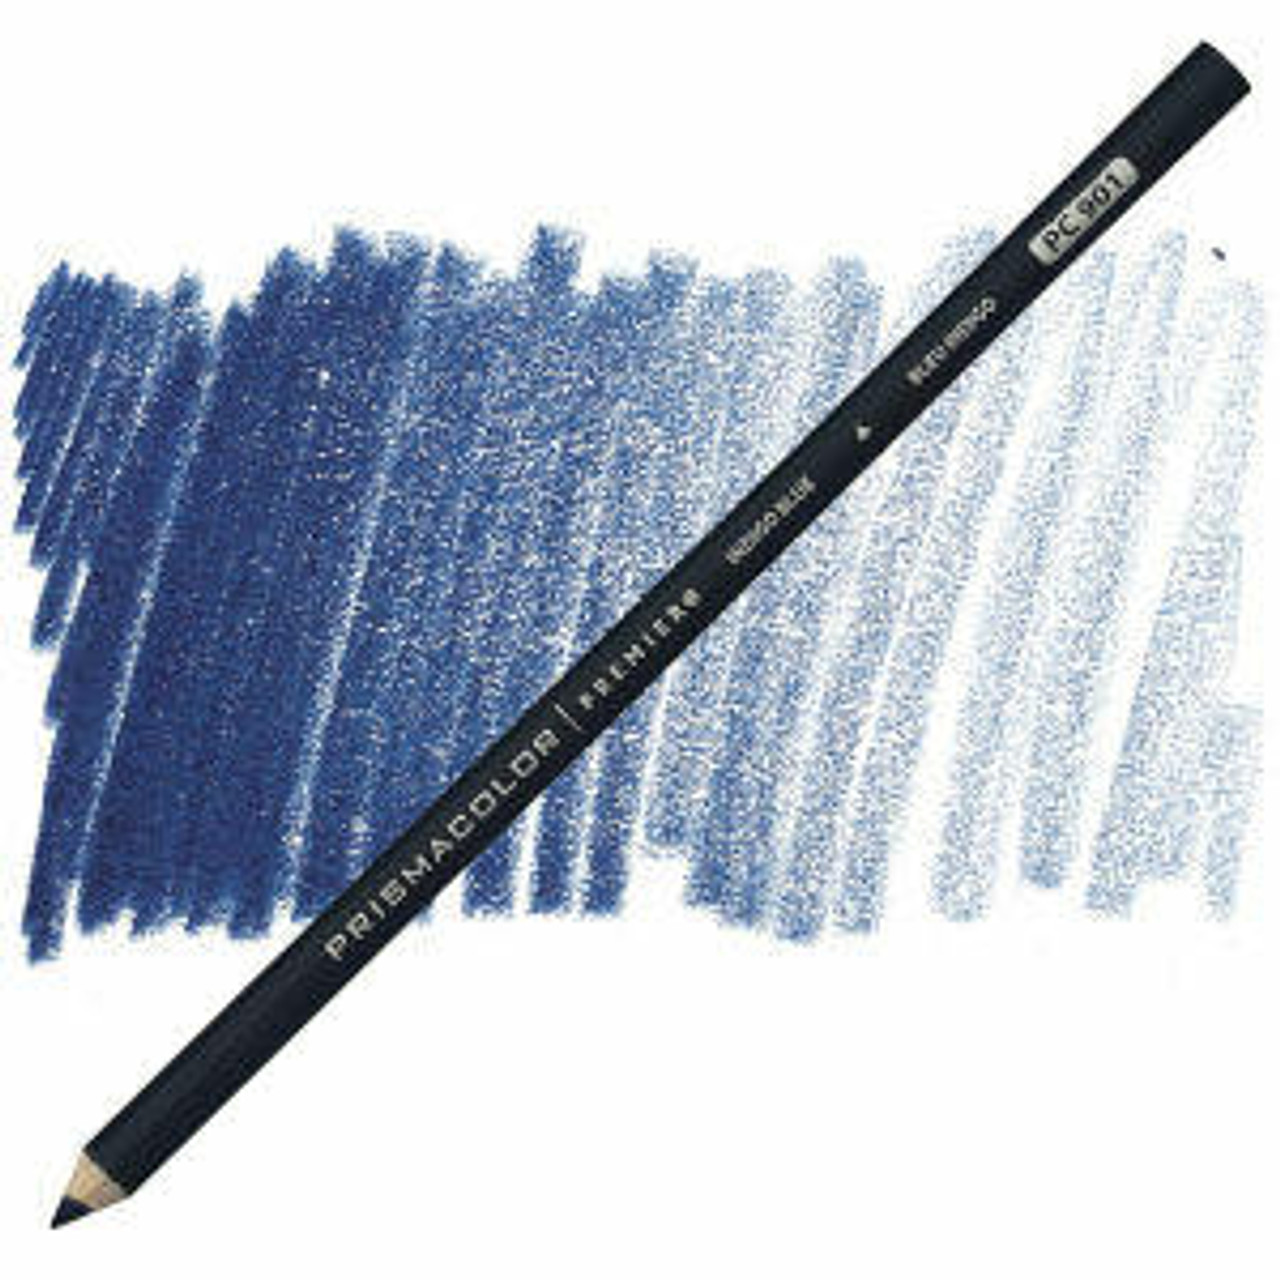 Prismacolor Thick Core Colored Pencil - Indigo Blue 901 - Sam Flax